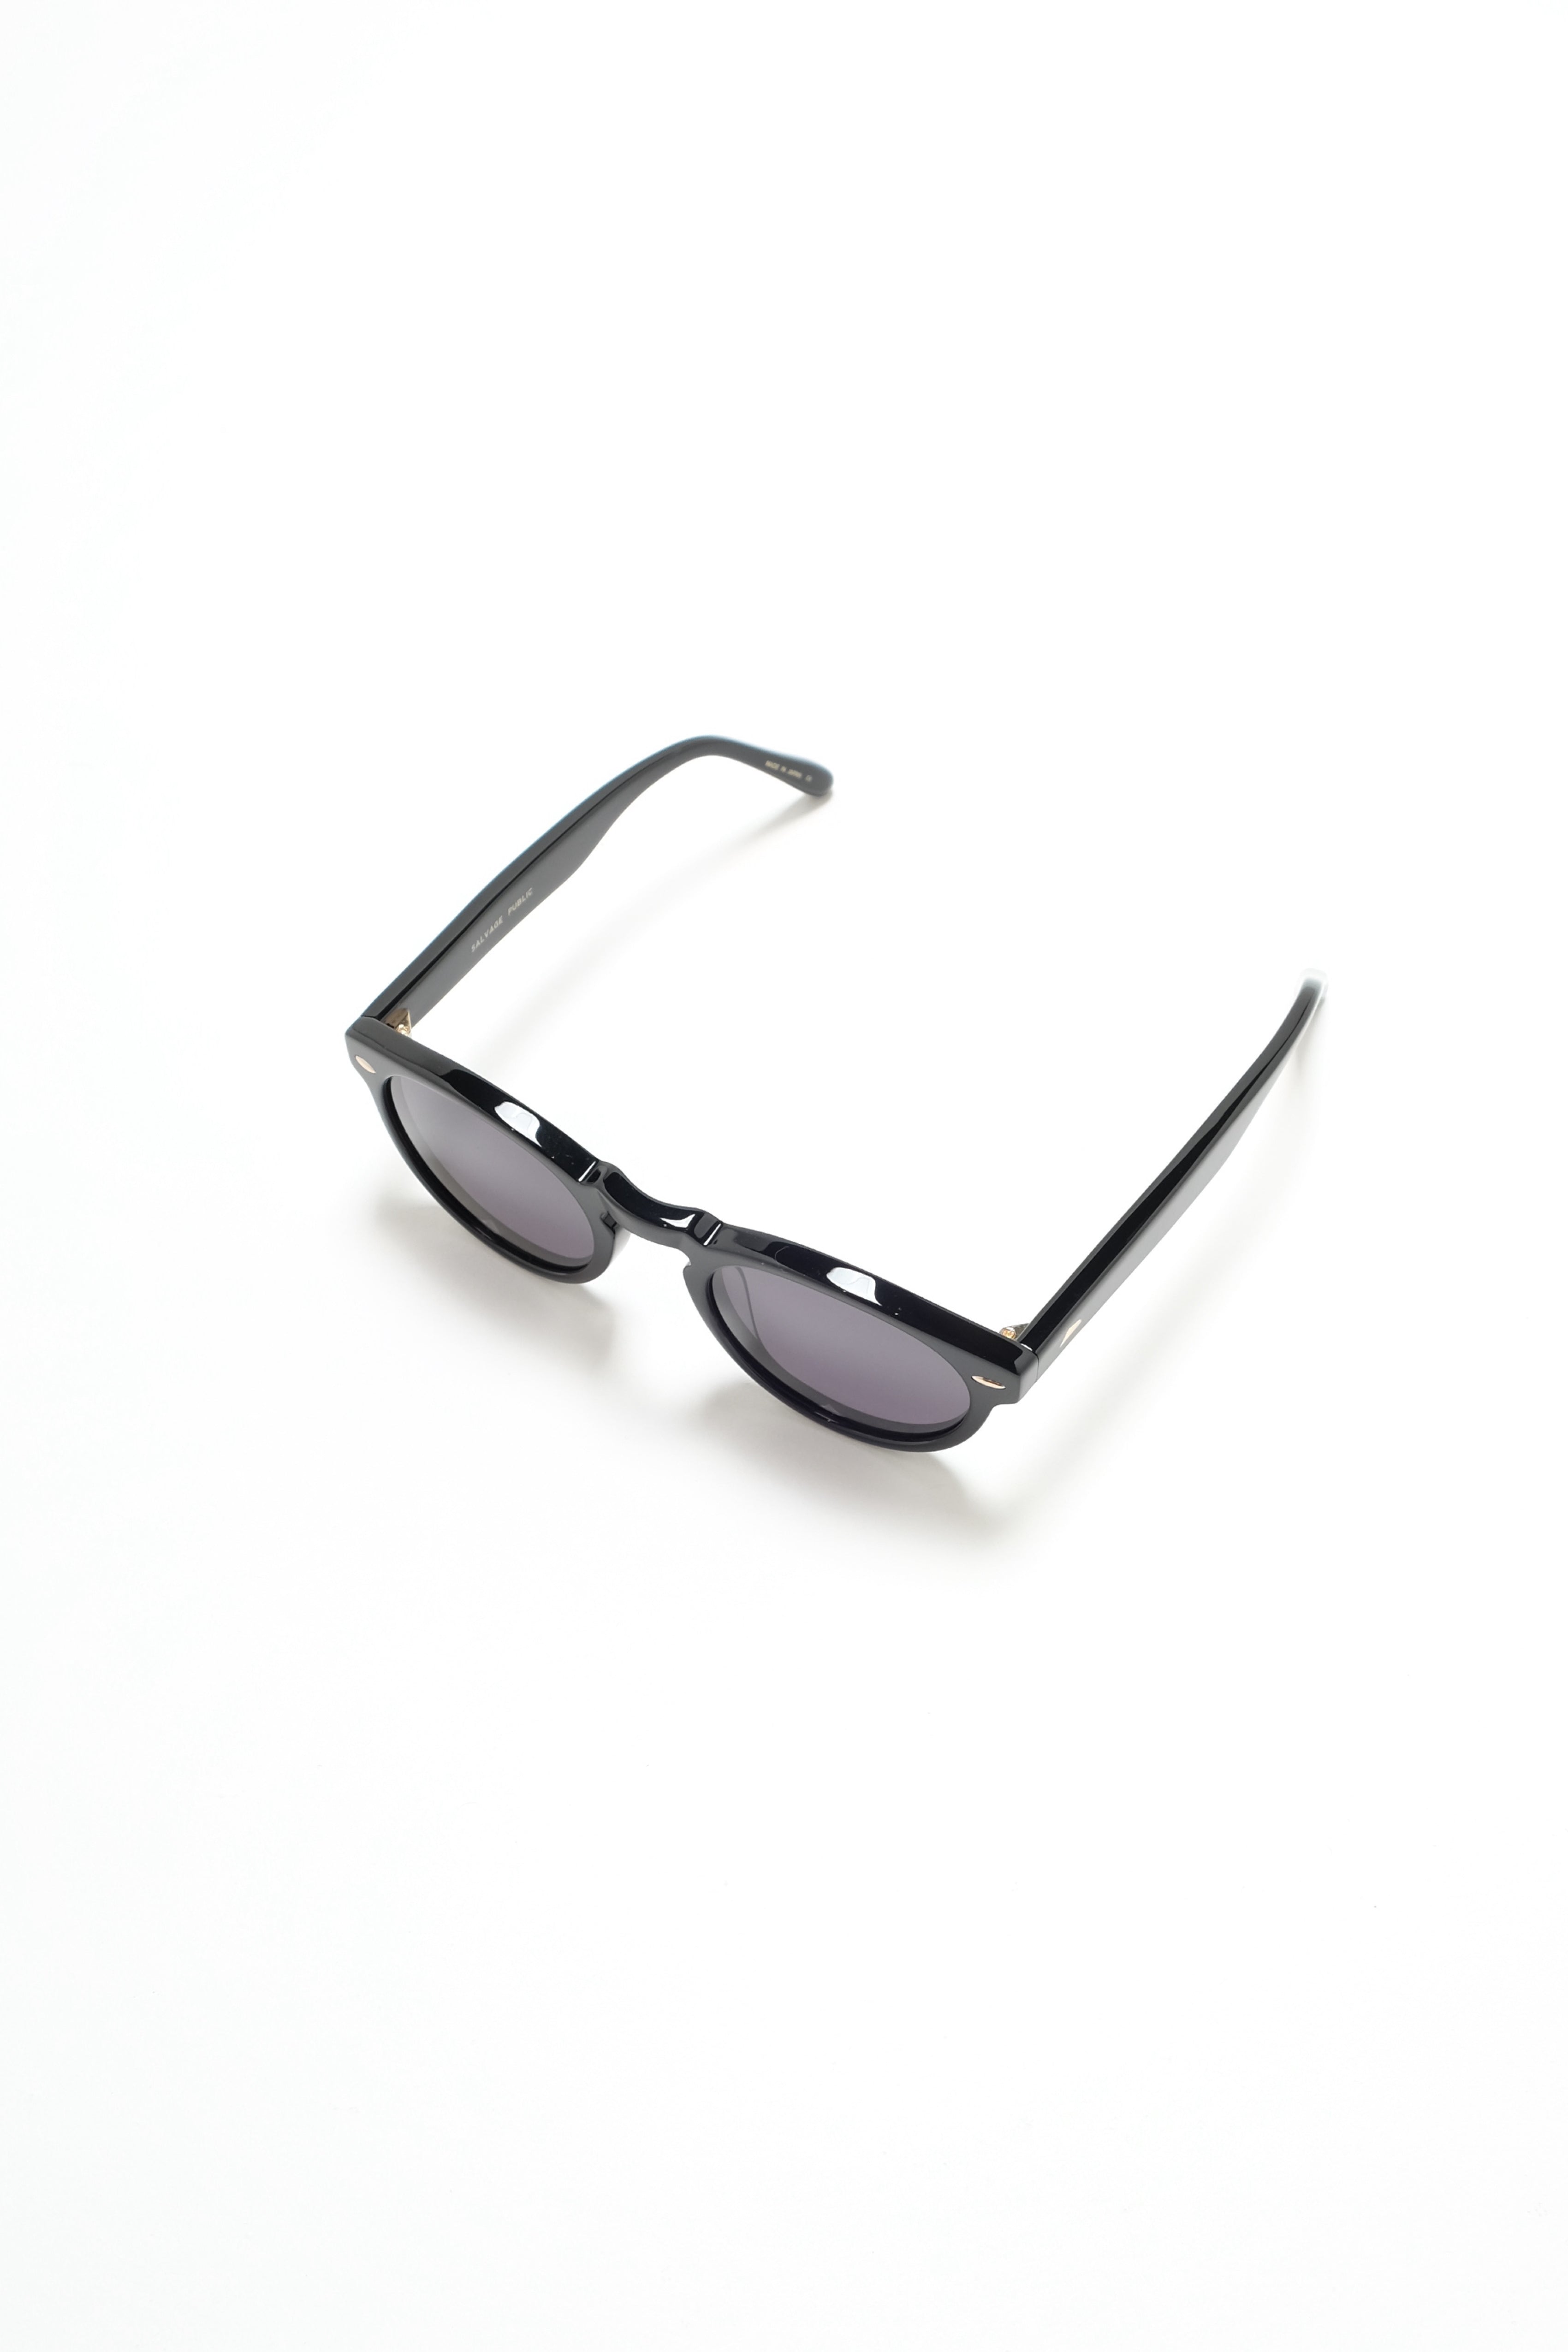 Sunglasses - Nui - Black